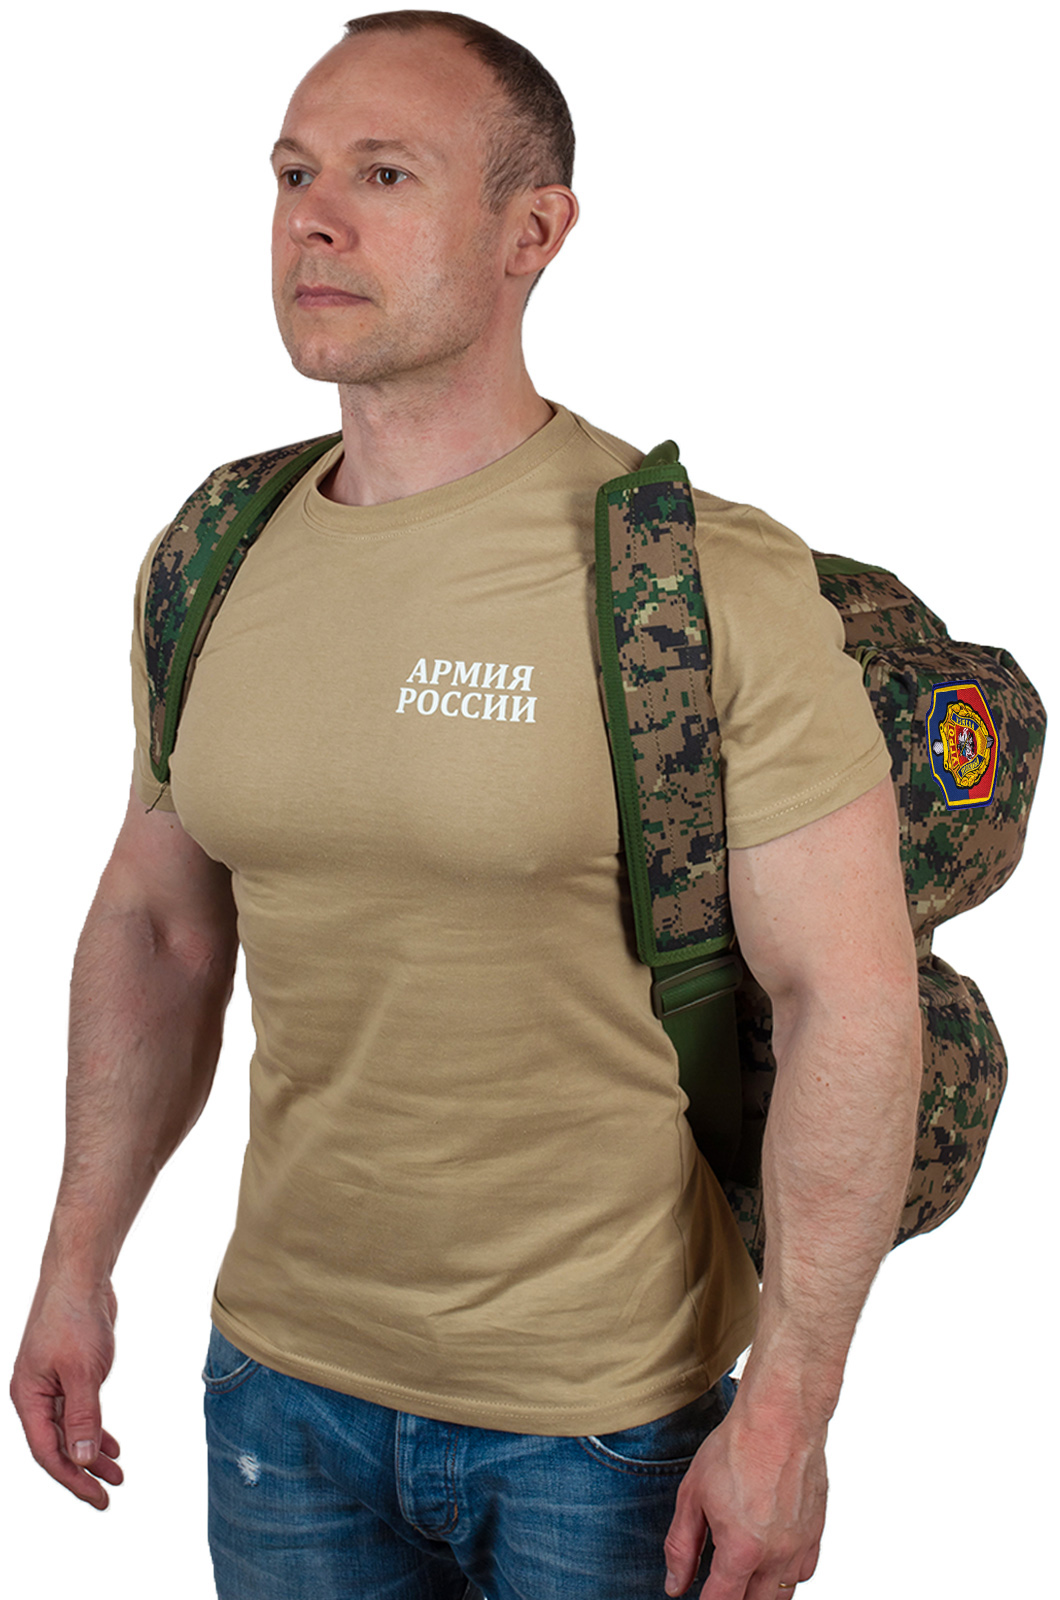 Армейская дорожная сумка с нашивкой УГРО 